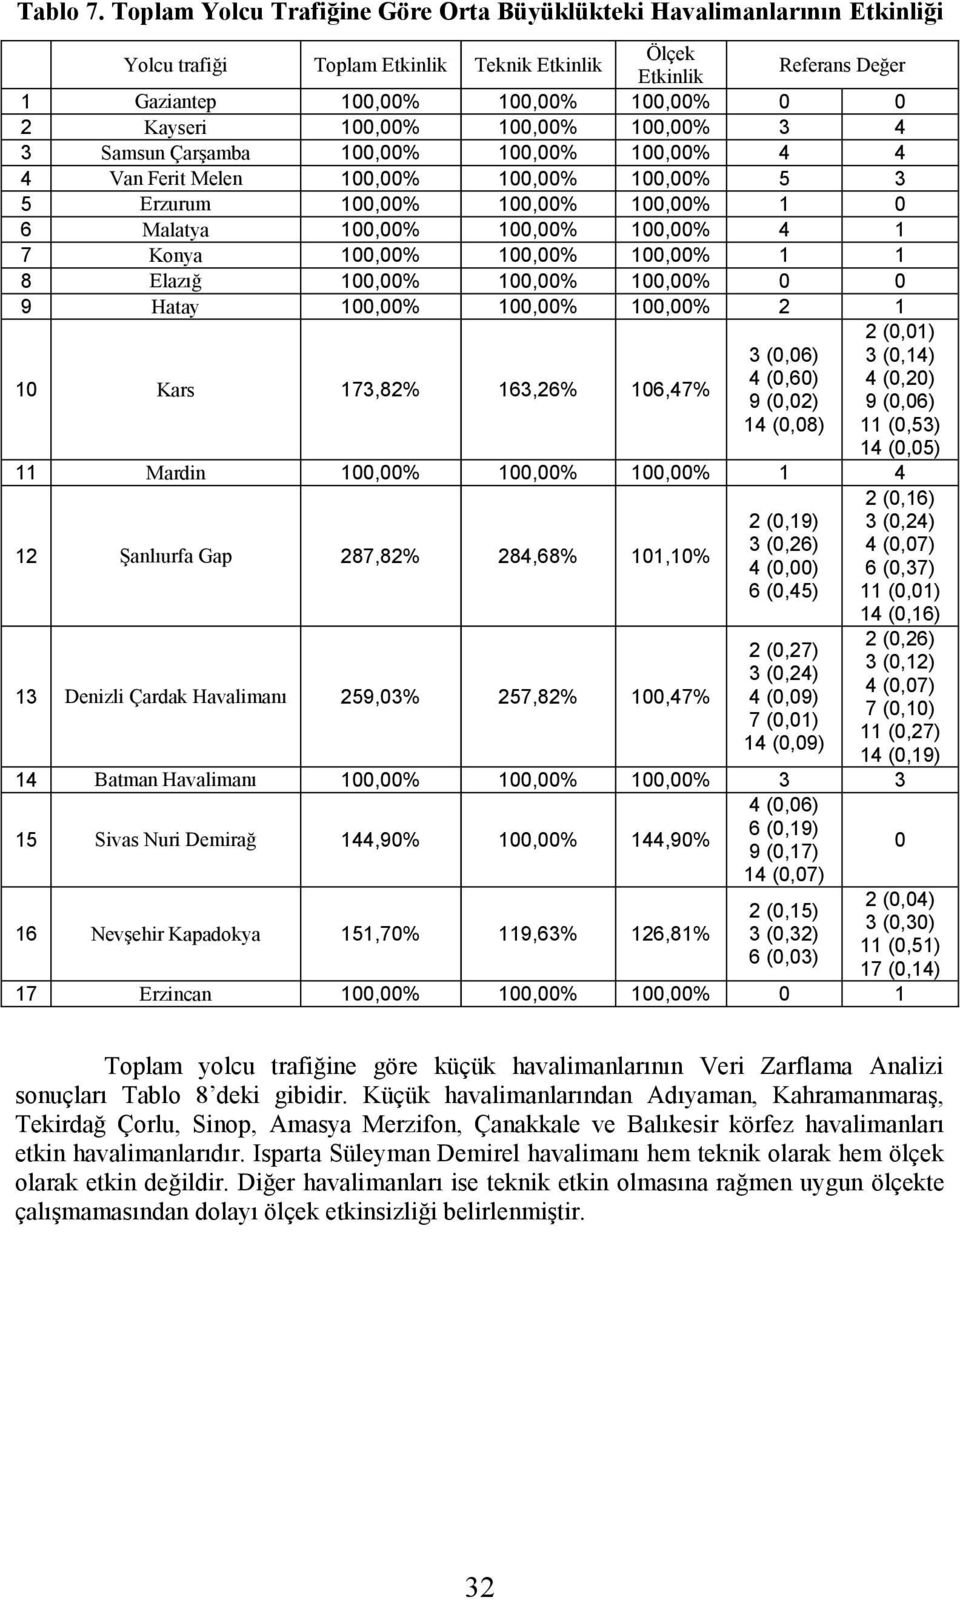 3 Samsun Çarşamba 1,% 1,% 1,% 4 4 4 Van Ferit Melen 1,% 1,% 1,% 5 3 5 Erzurum 1,% 1,% 1,% 1 6 Malatya 1,% 1,% 1,% 4 1 7 Konya 1,% 1,% 1,% 1 1 8 Elazığ 1,% 1,% 1,% 9 Hatay 1,% 1,% 1,% 2 1 1 Kars